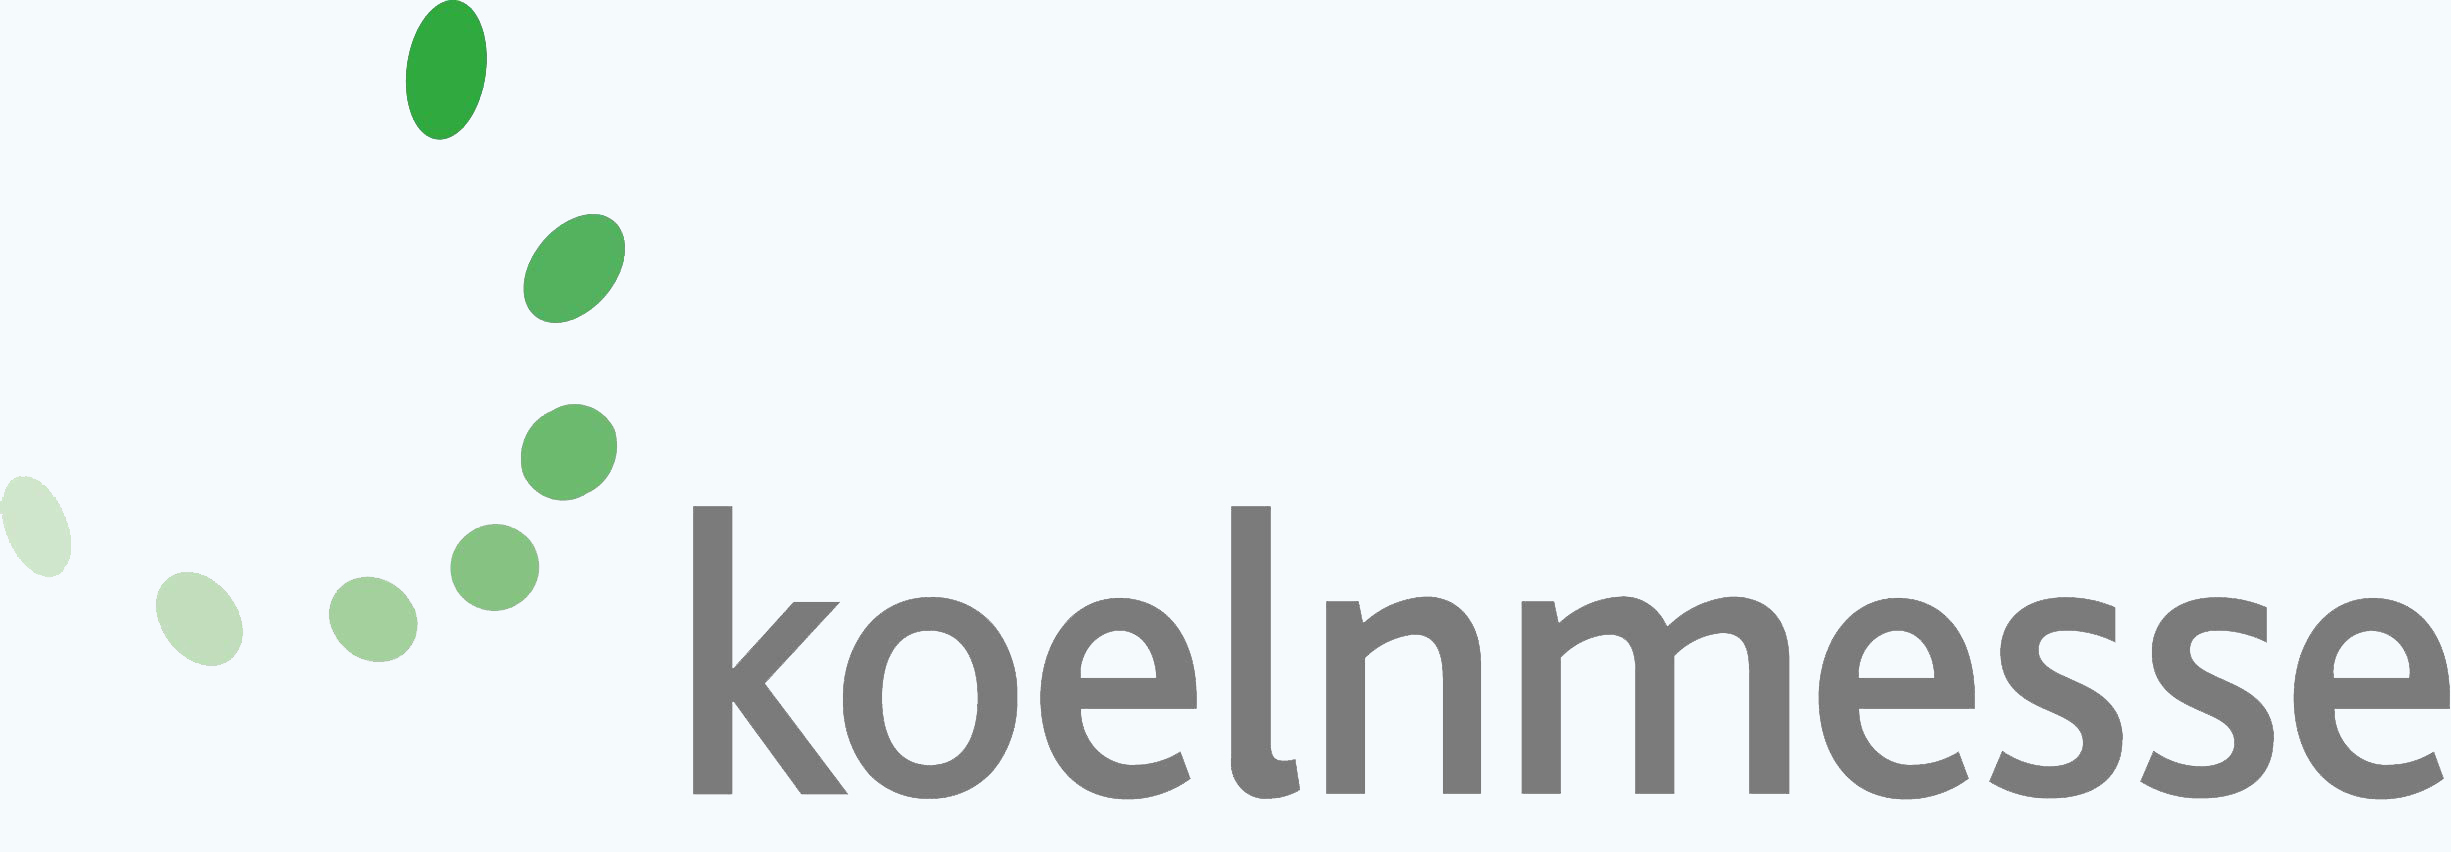 cropped koelnmesse logo claim 1